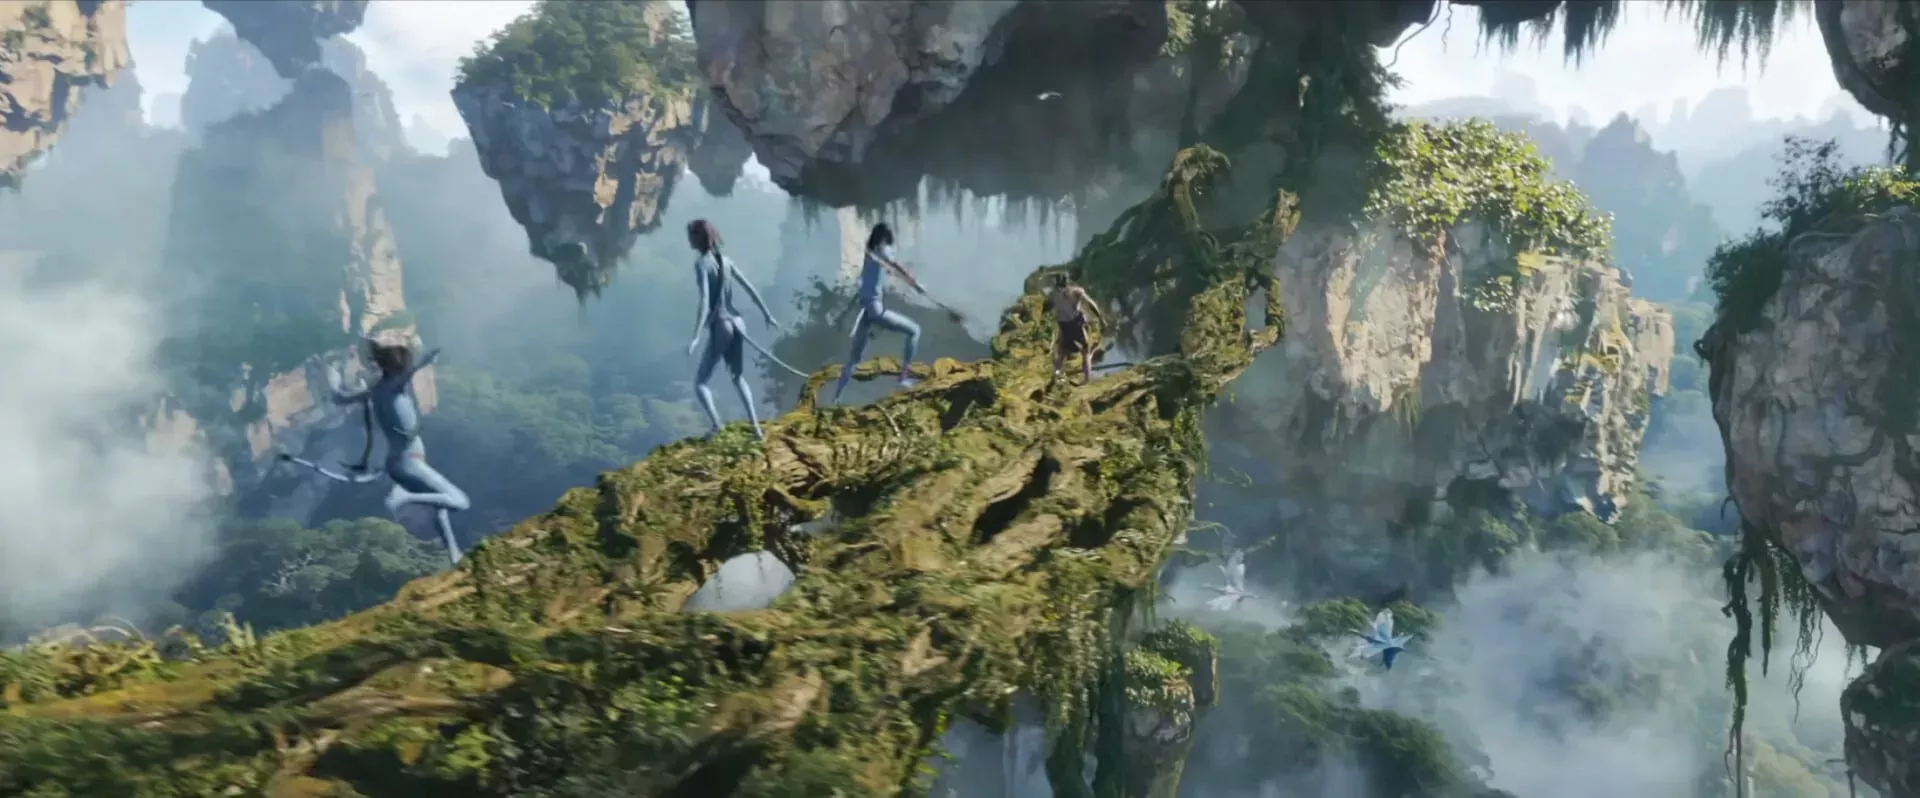 Avatar: La forma del agua tiene todo en contra en la taquilla